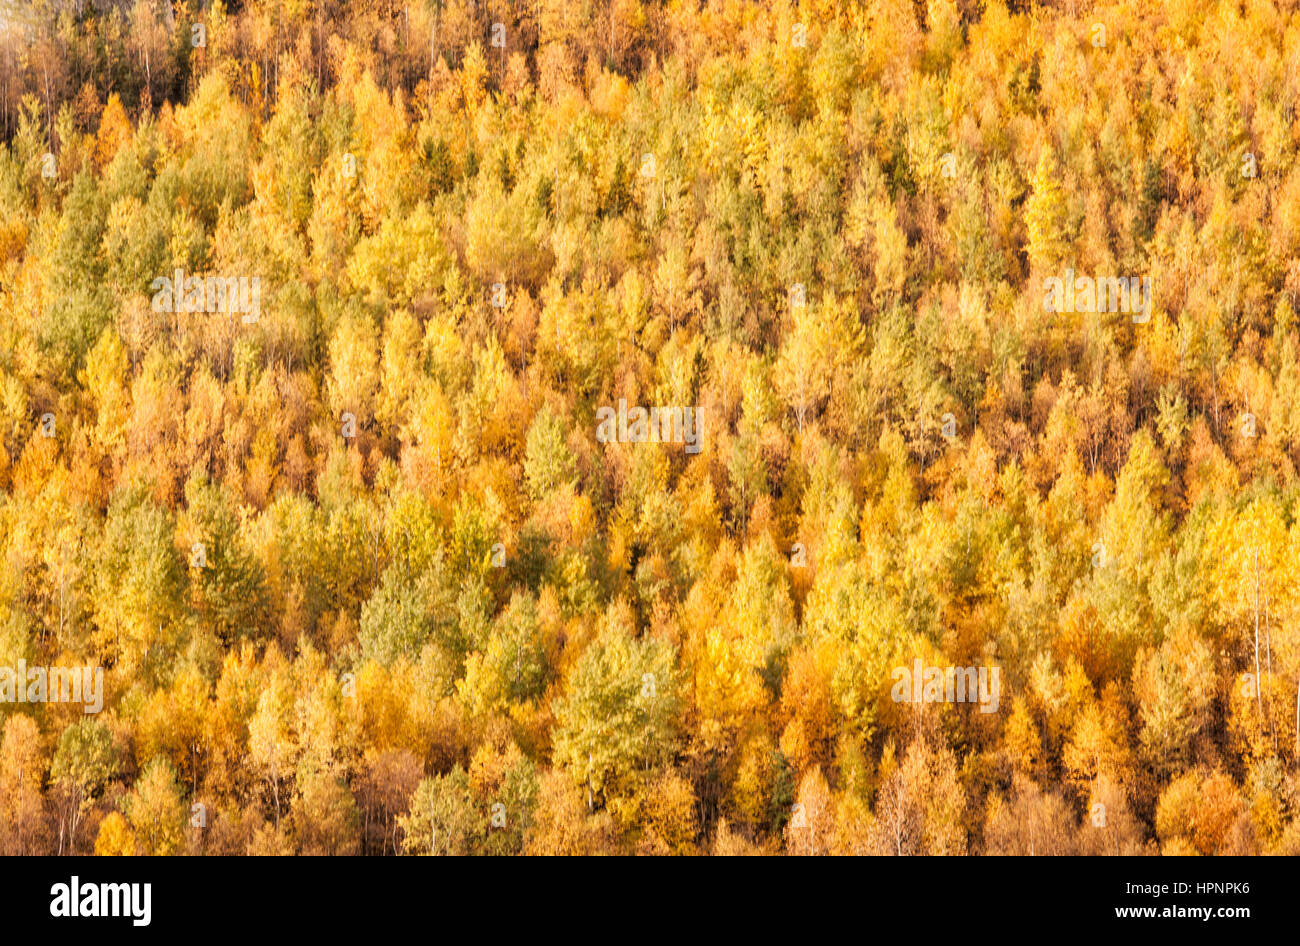 Nordamerika; Kanada; Yukon-Territorium; Coastal Range Mountains; Espen; Farben des Herbstes. Stockfoto